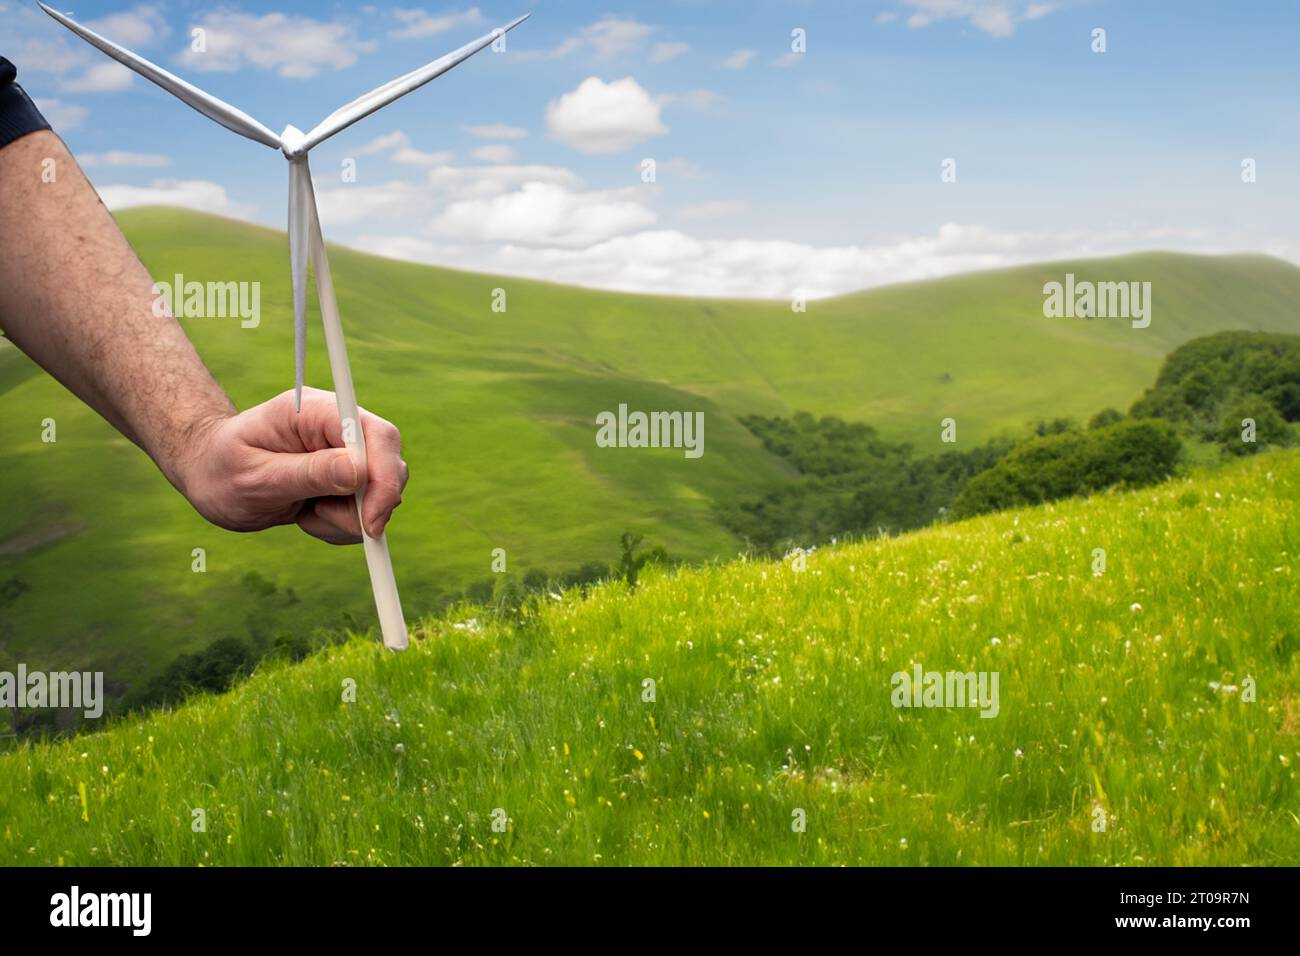 Hand place une éolienne dans un paysage vallonné. Symbole pour construire plus d'éoliennes. Banque D'Images